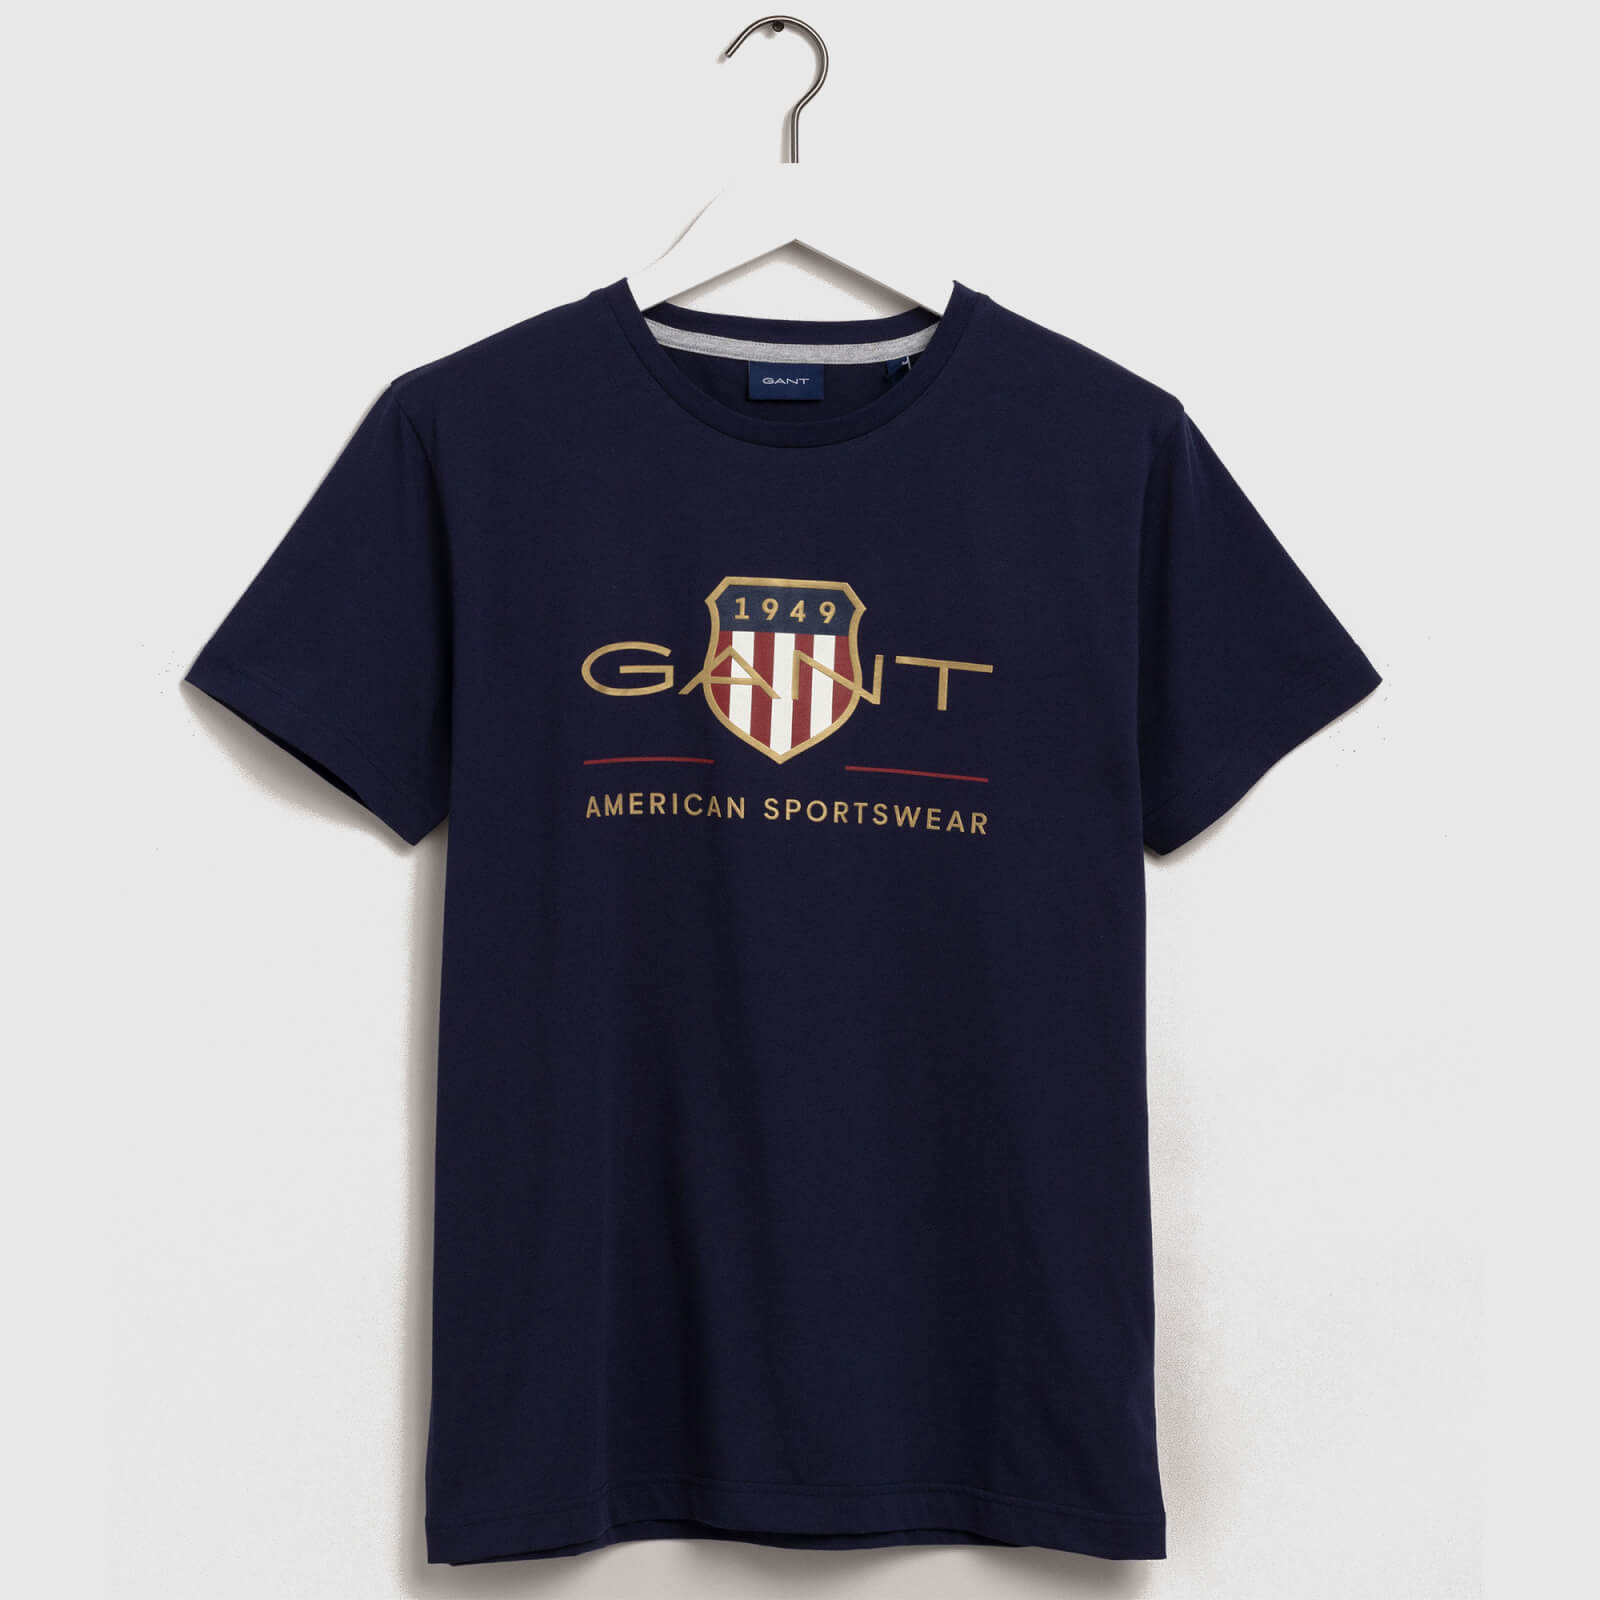 GANT Men's Archive Shield T-Shirt - Evening Blue - M